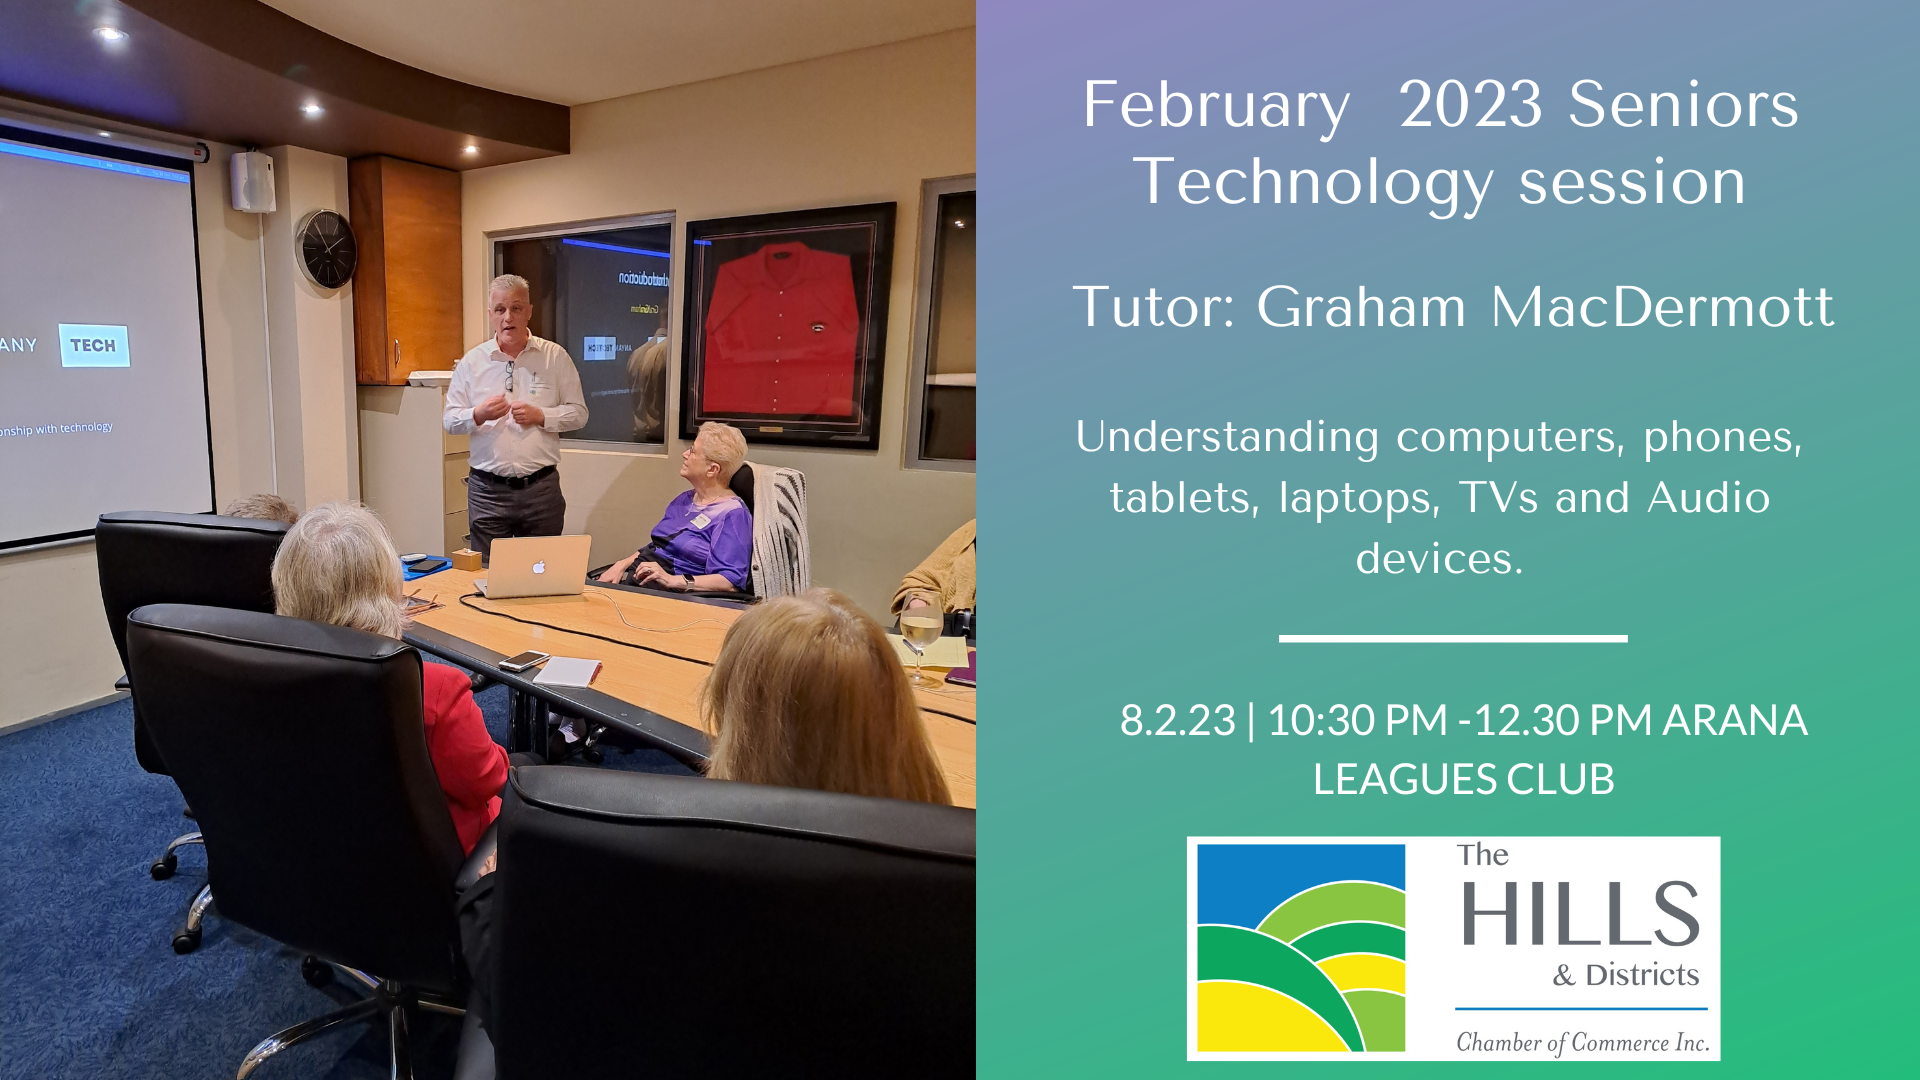 Seniors Event » February 2023 Seniors Technology Session